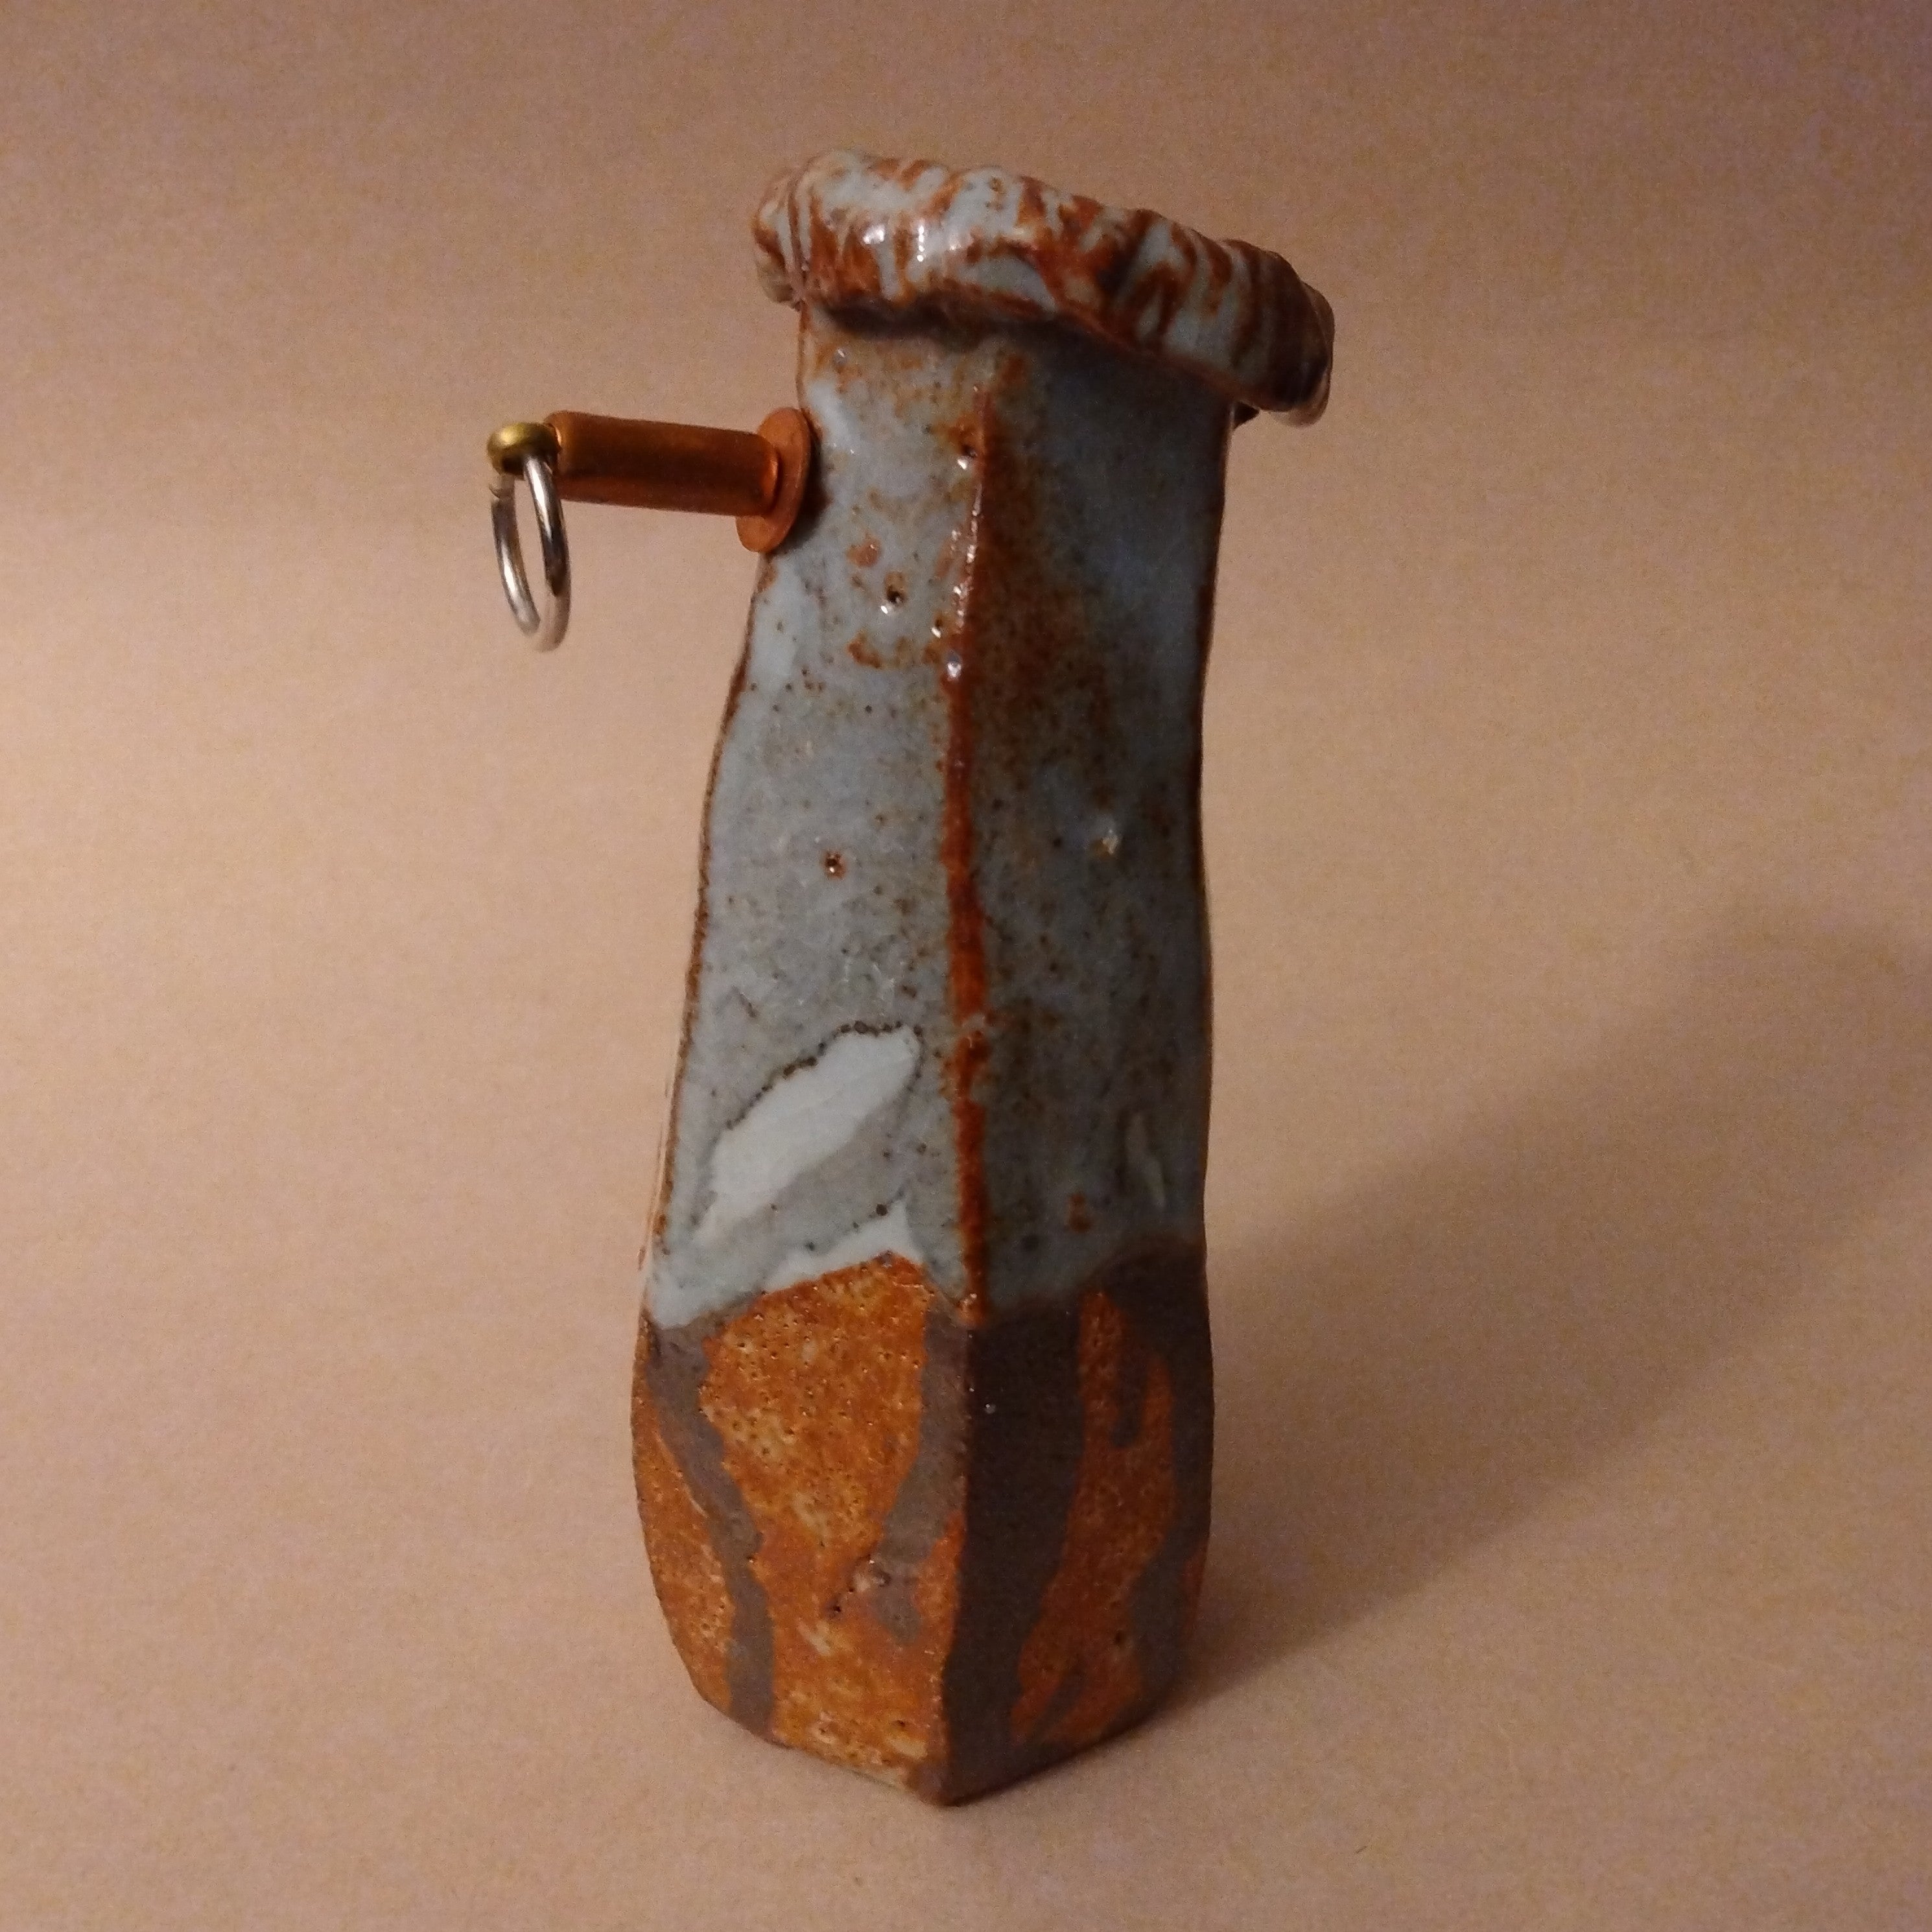 20% to Wajima Earthquake Relief - Shino Glaze Vase, by George Gledhill